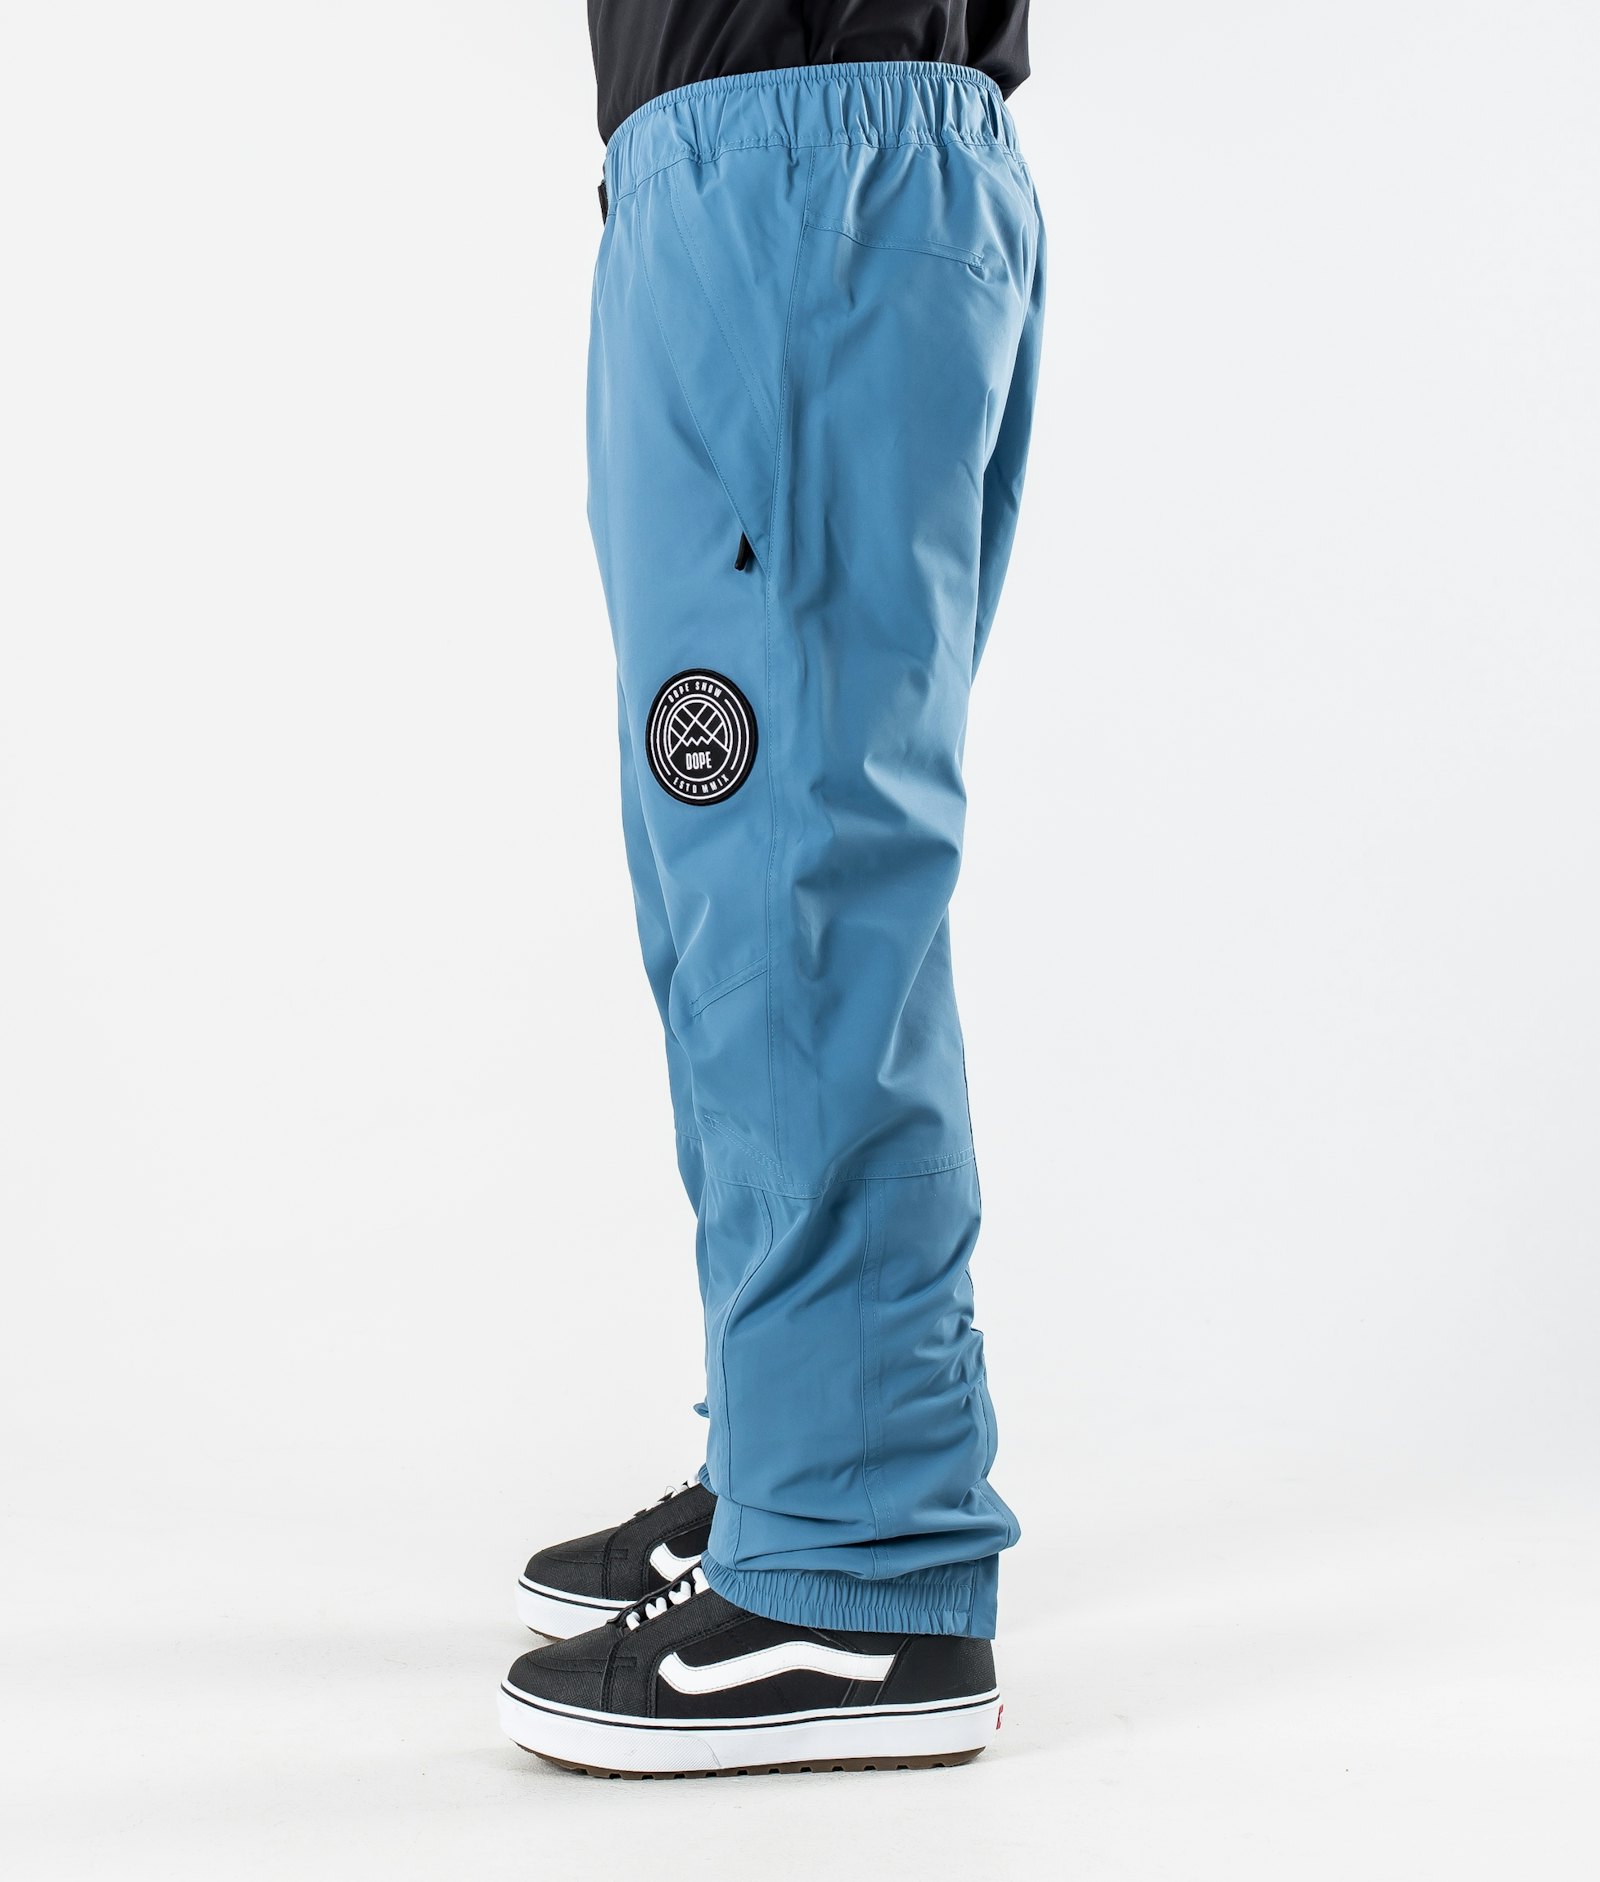 Blizzard 2020 Snowboard Pants Men Blue Steel